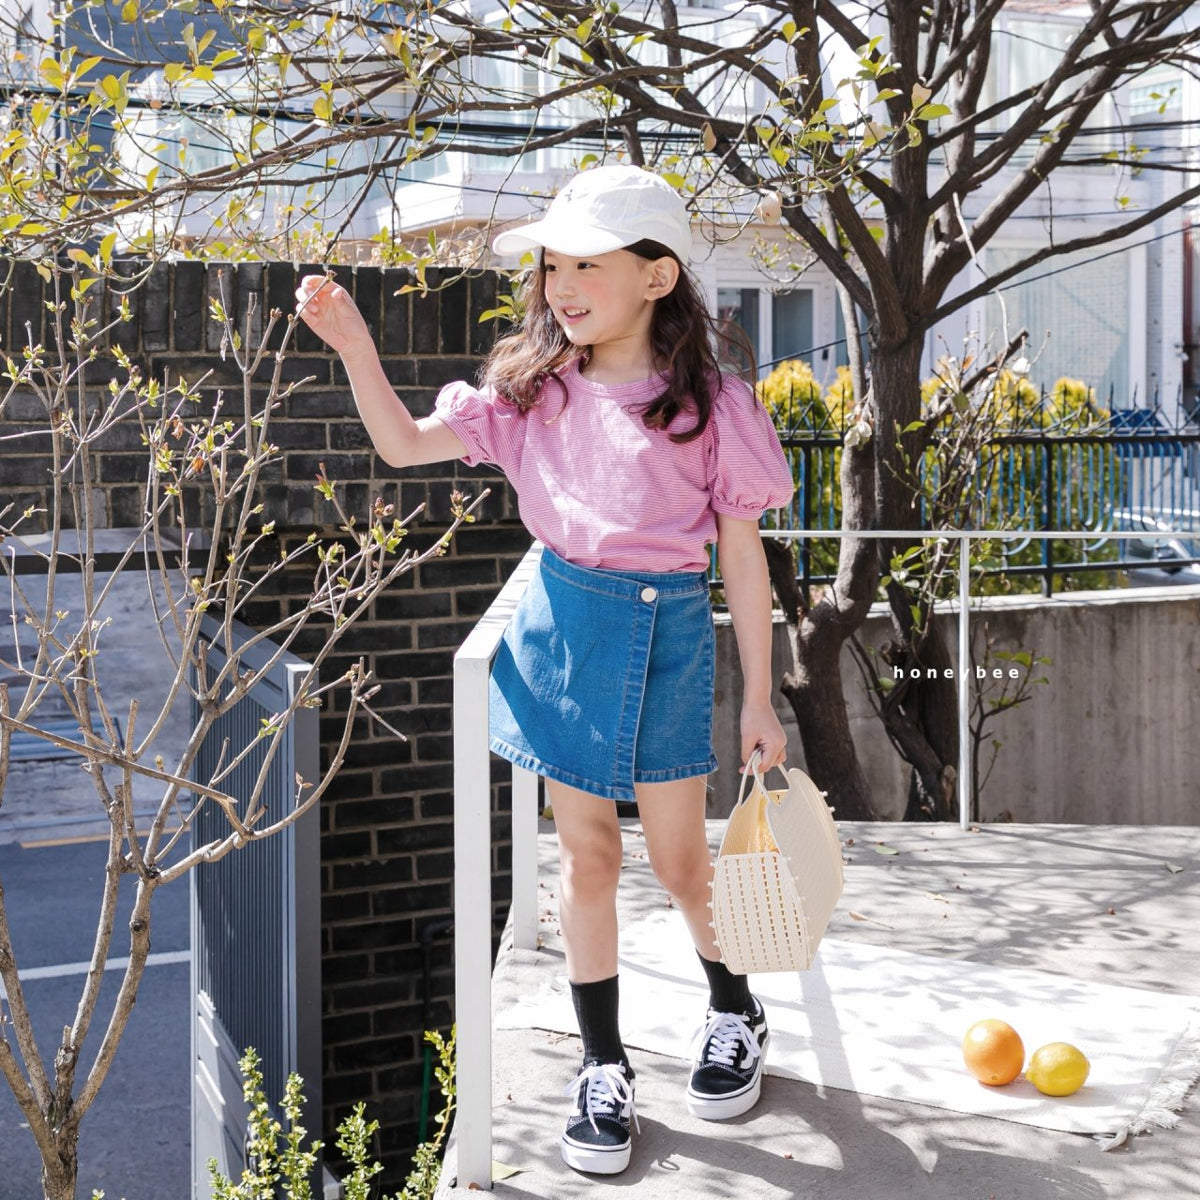 SALE／75%OFF】 新品SALE160cm女の子ラップスカート風ショートパンツ